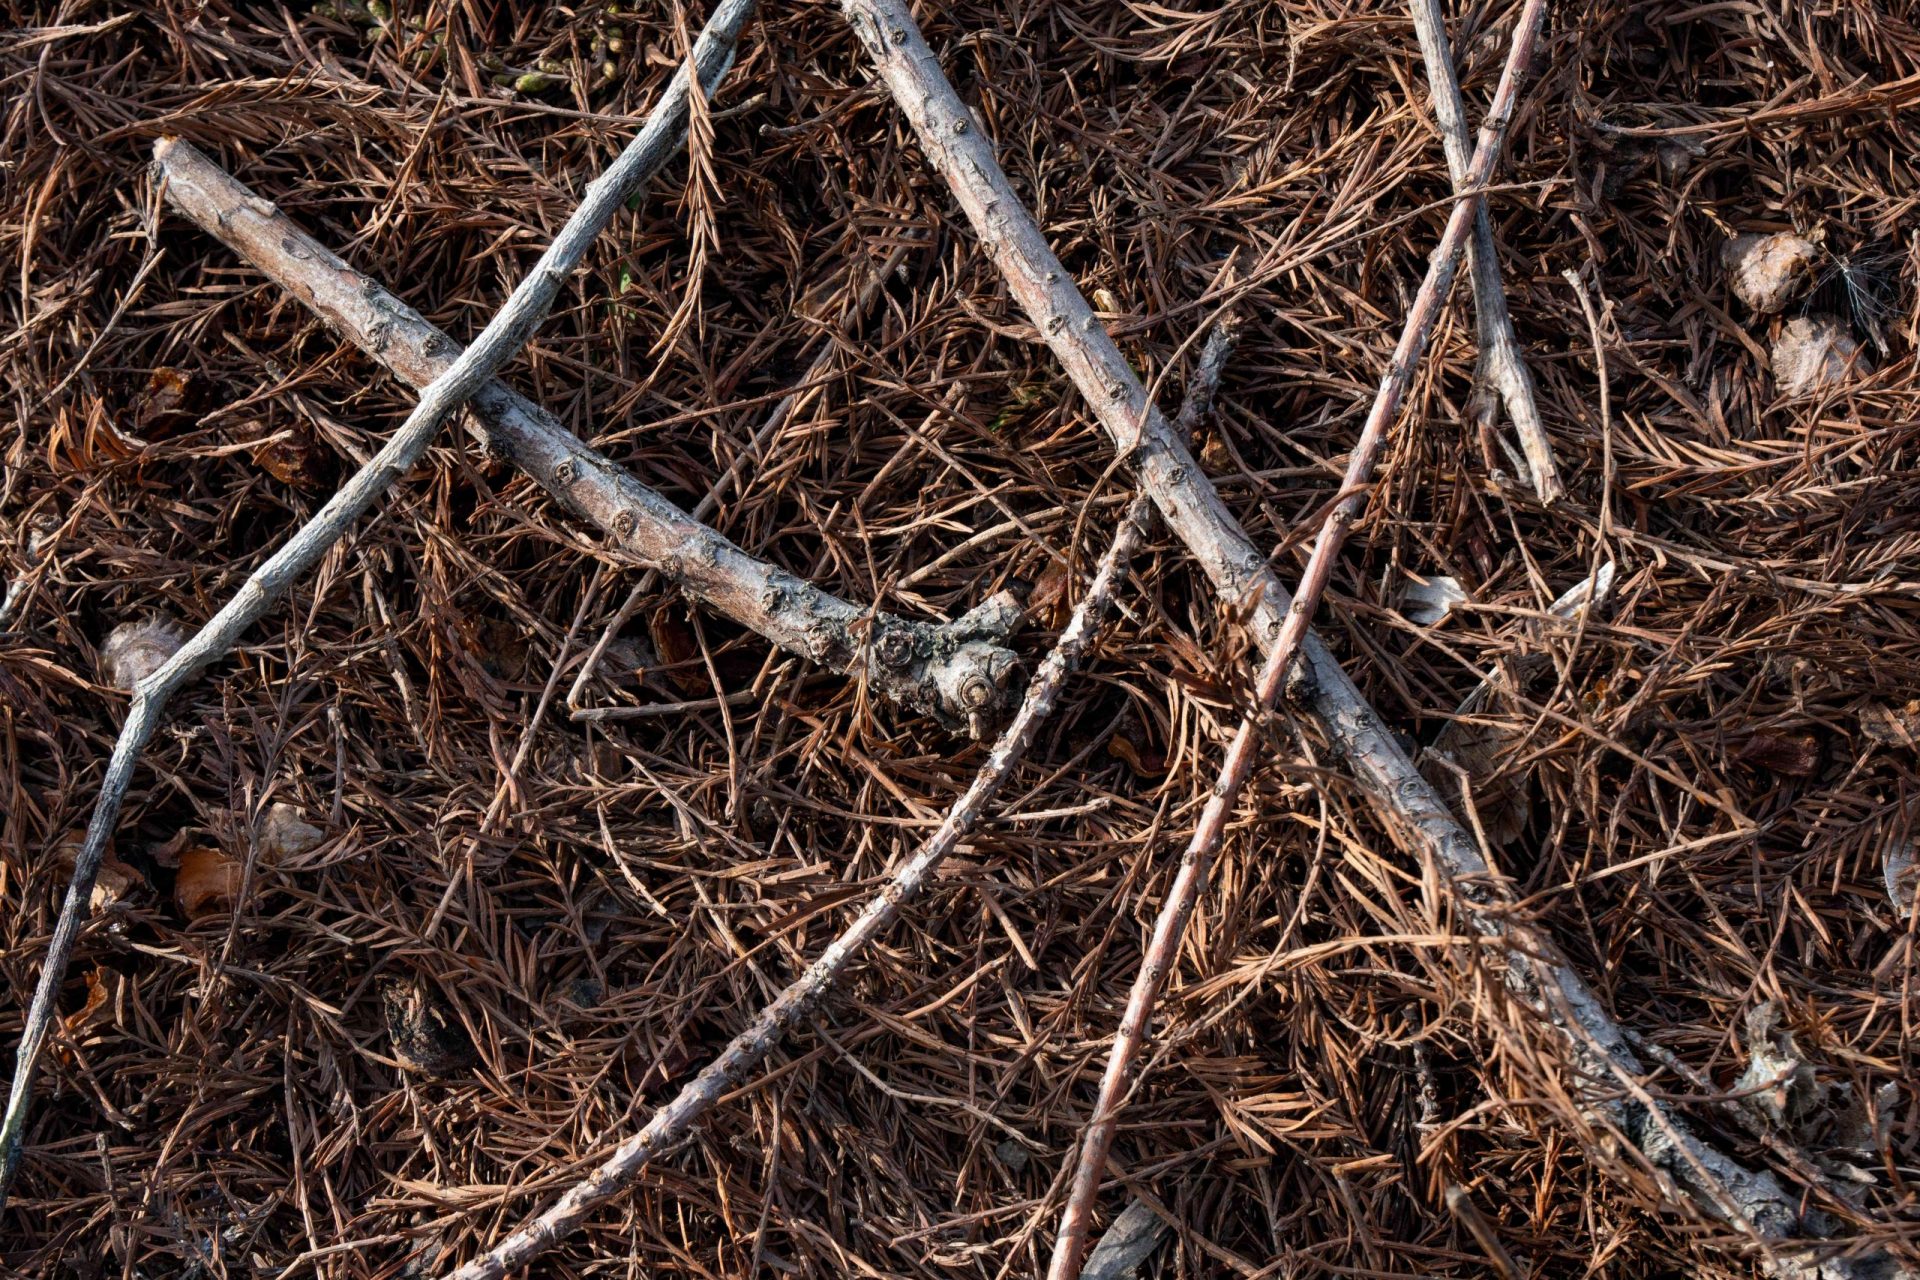 primer plano de ramitas de árbol en el suelo rodeadas de agujas de pino marrones